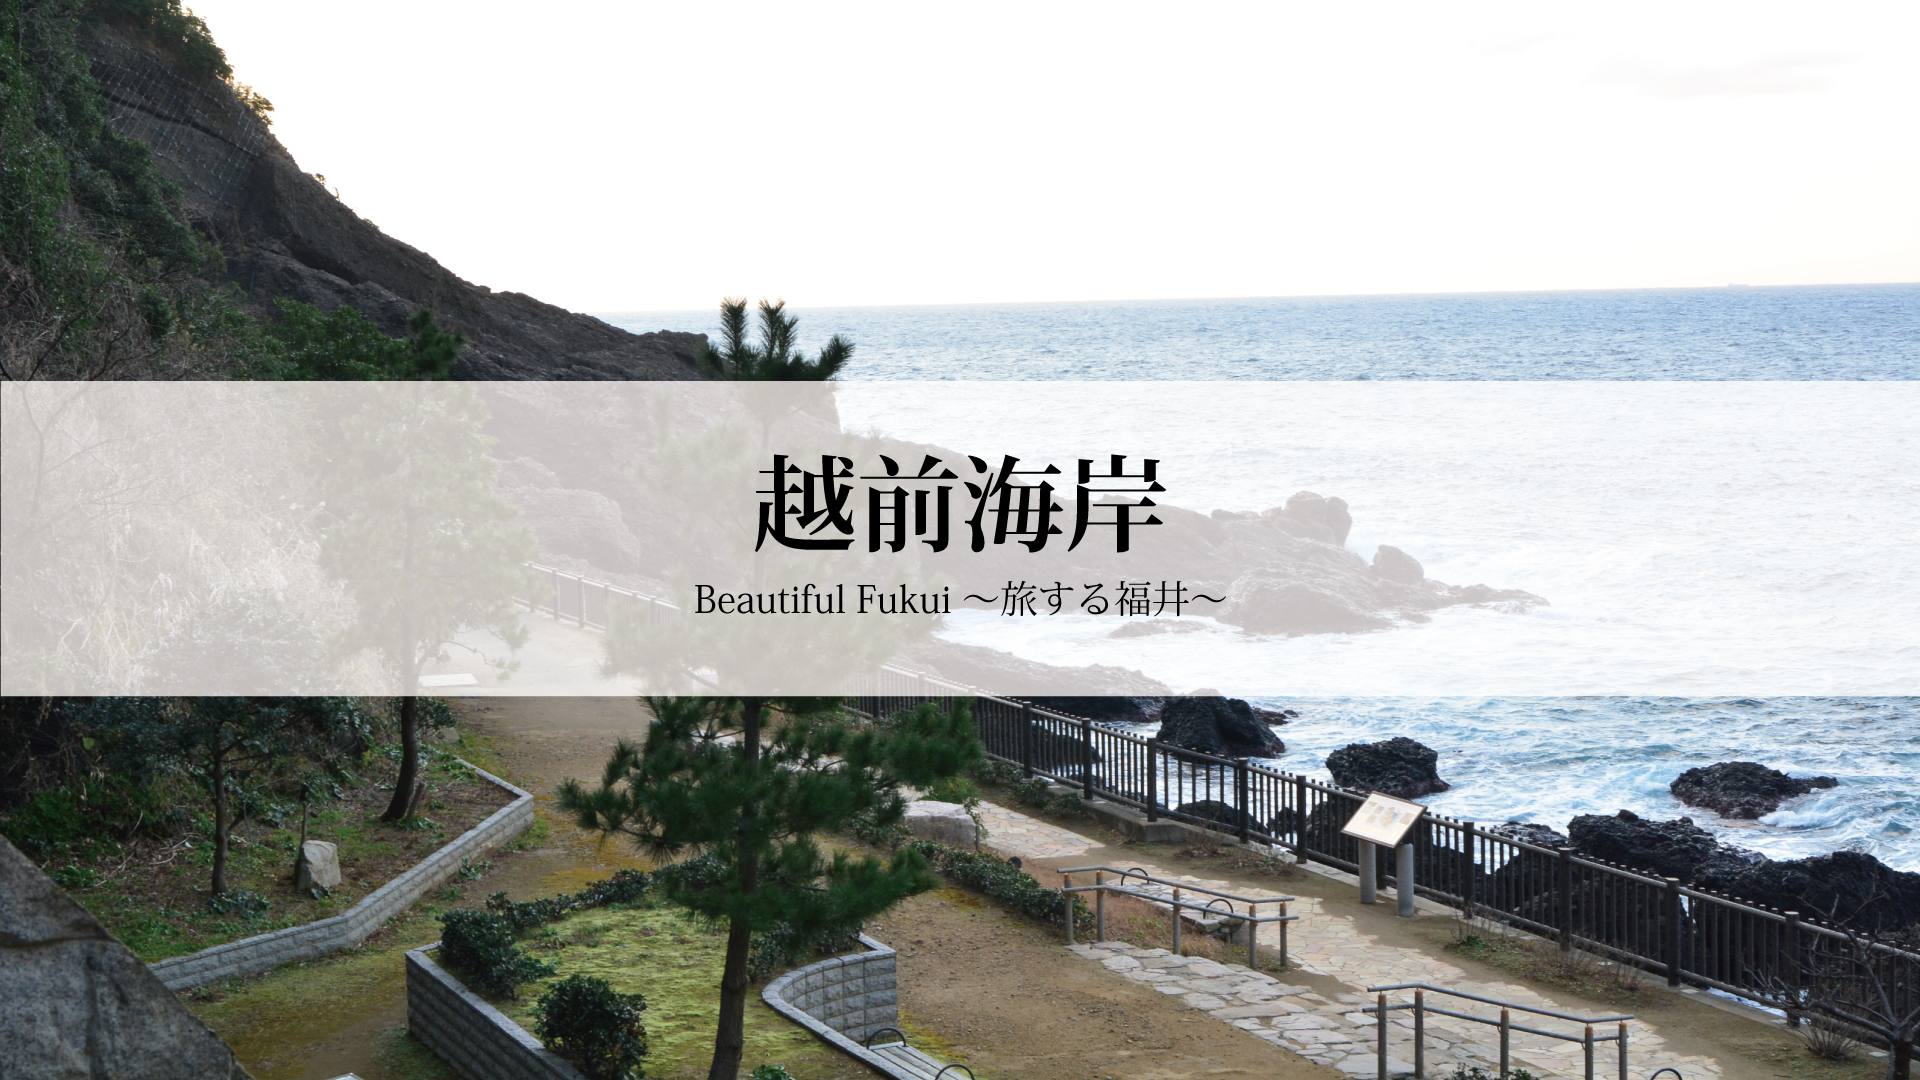 30秒で見る美しい風景動画 越前海岸 Beautiful Fukui 旅する福井 福井の旬な街ネタ 情報ポータル 読みもの ふーぽ